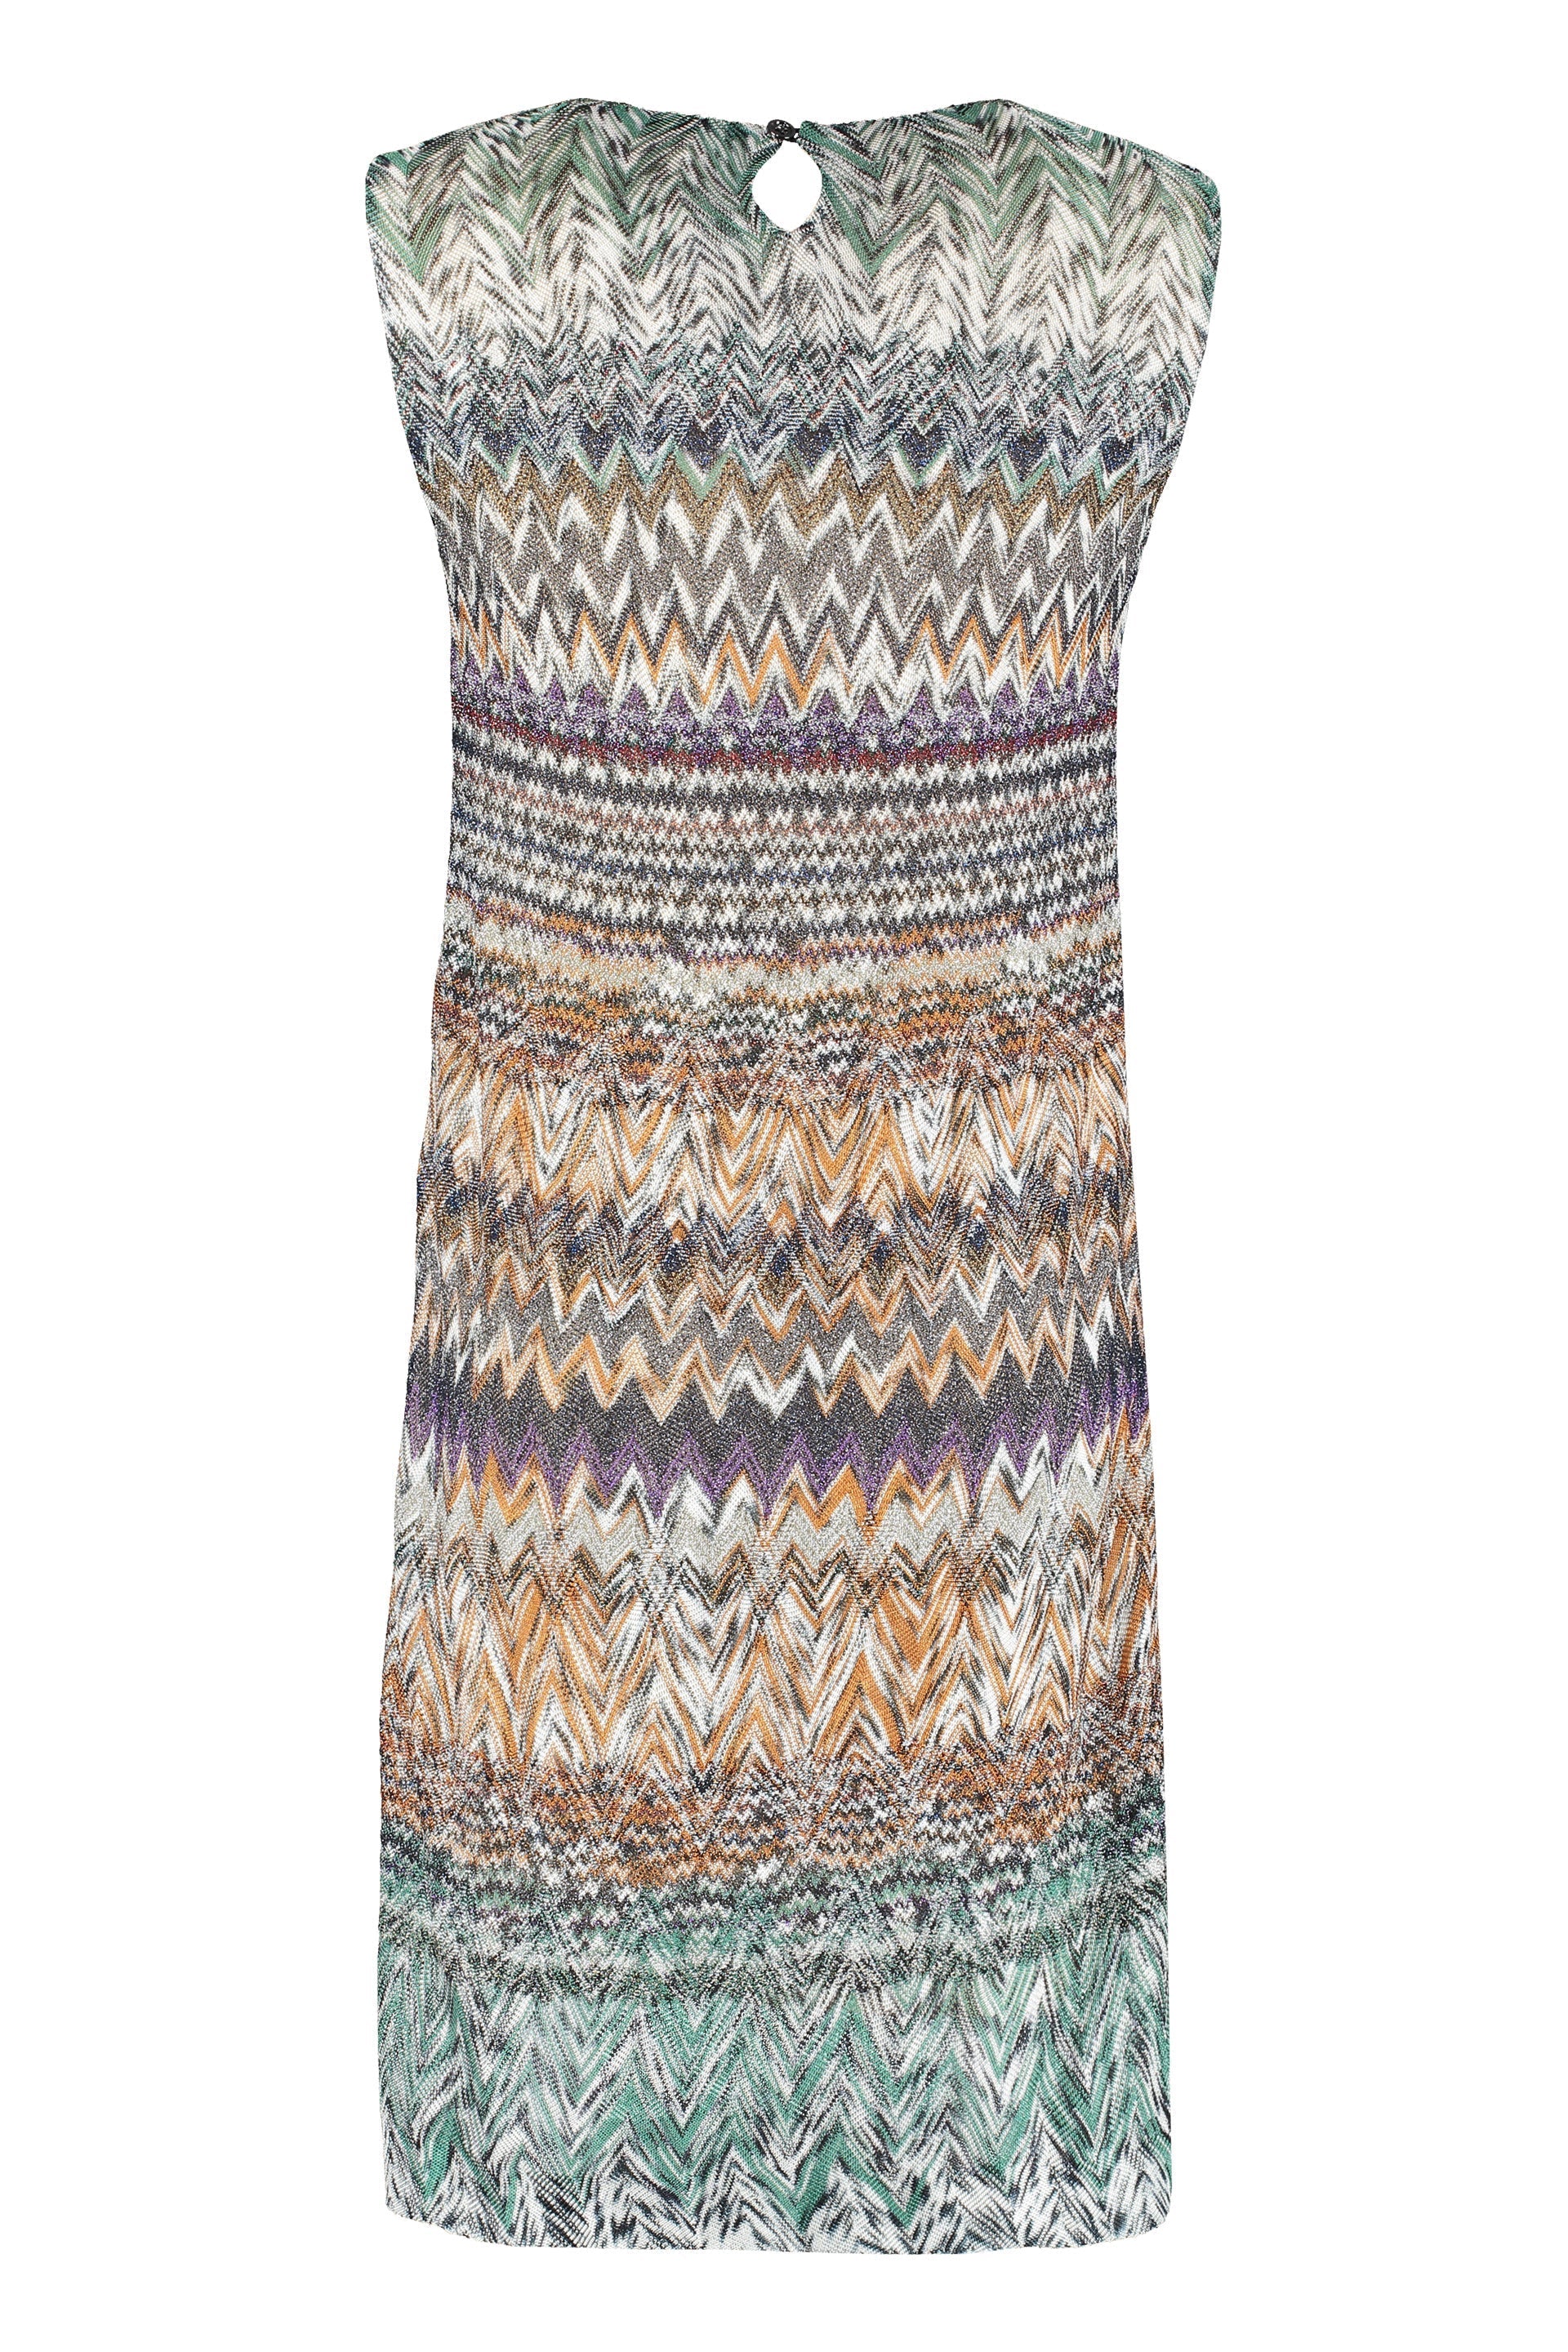 Chevron knit dress-Missoni-OUTLET-SALE-44-ARCHIVIST